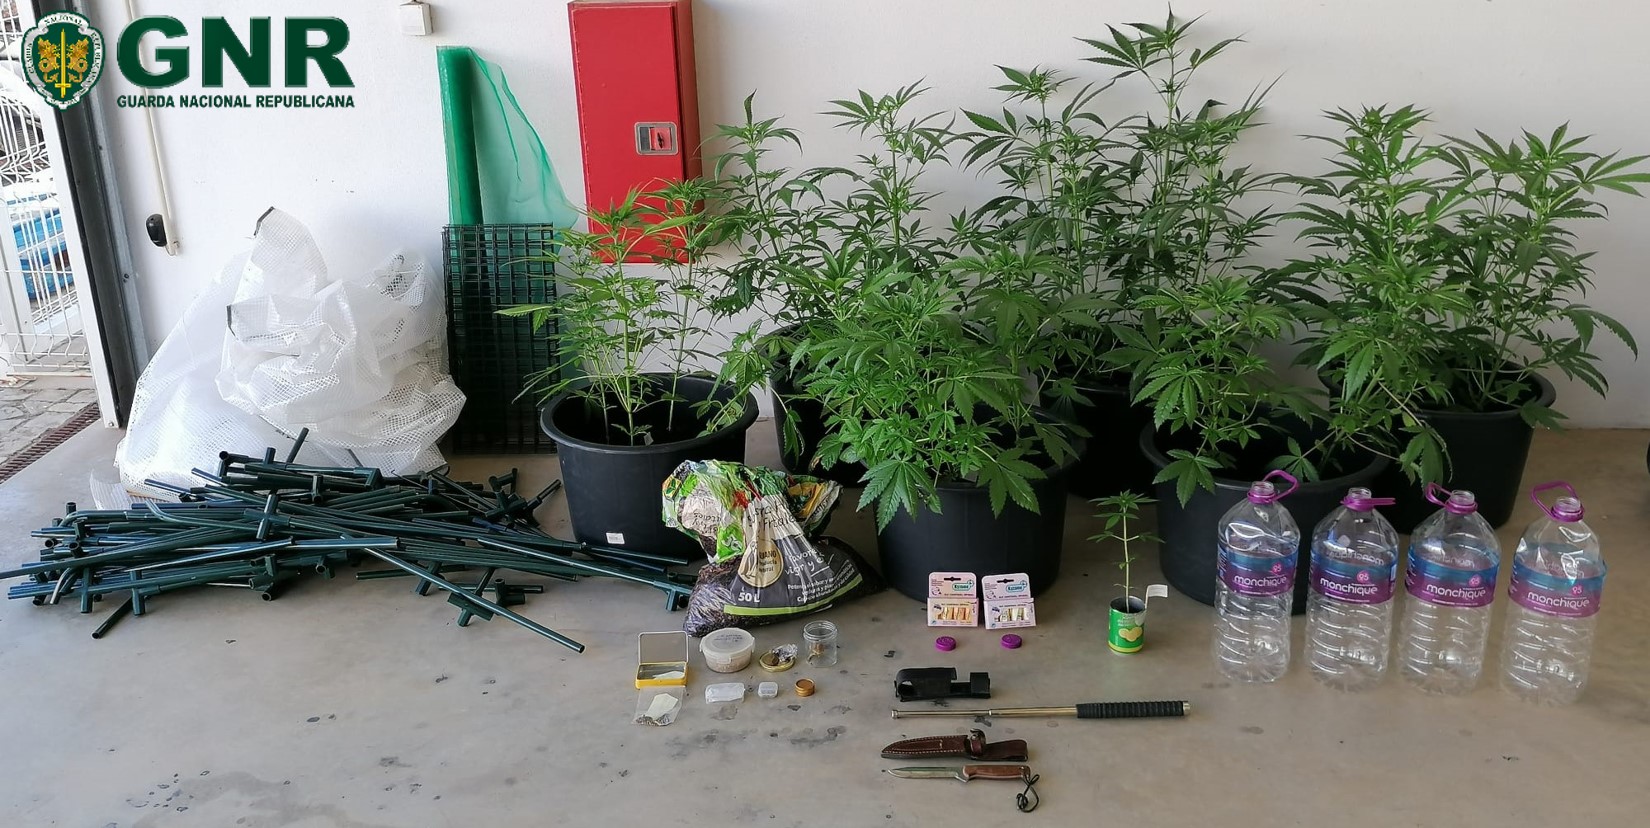 Detido homem de 40 anos por cultivar cannabis em estufa no concelho de Vila do Bispo